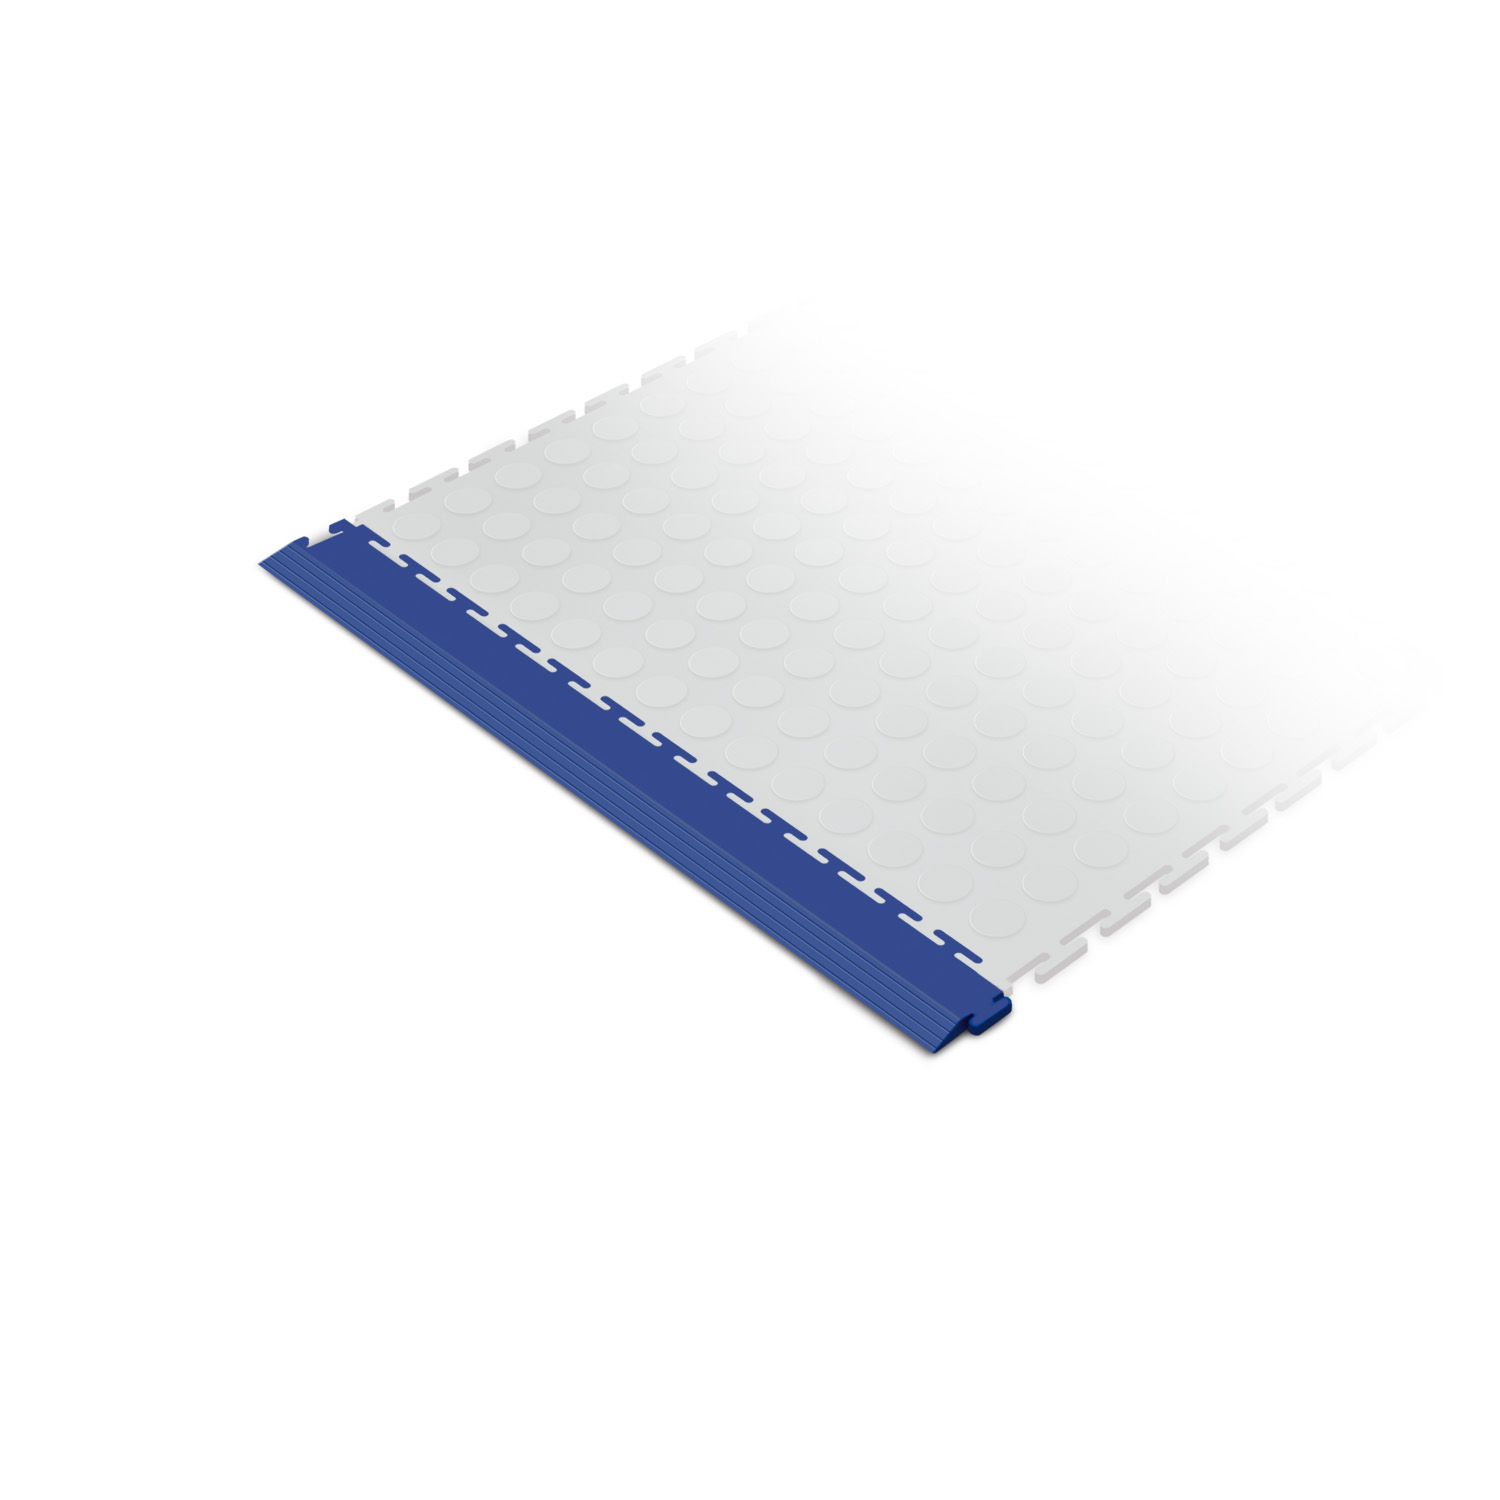 Standard edge ramp tile (blue)